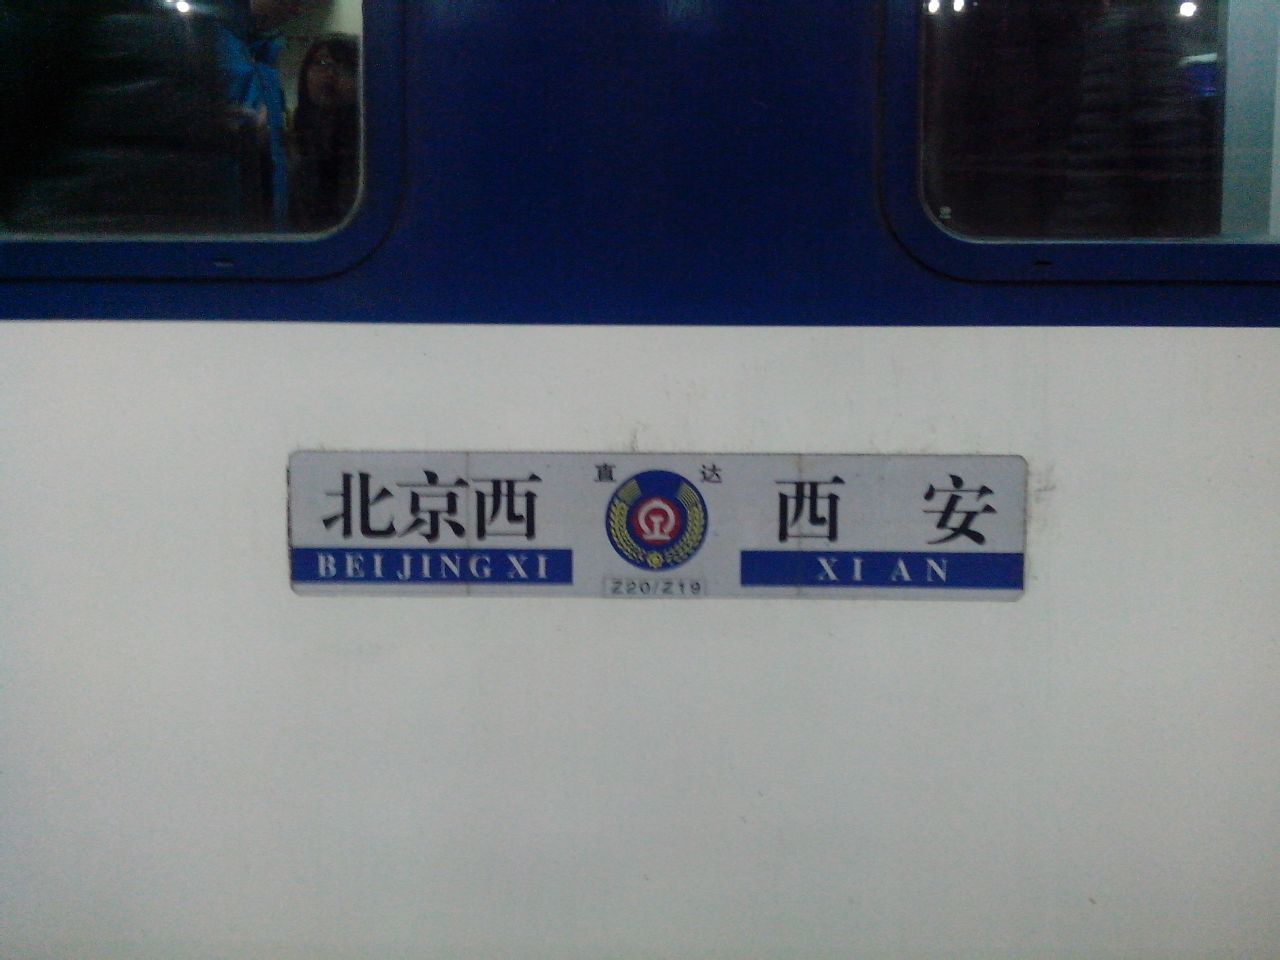 列车信息 车次:z20次 运行信息 站次 站名 日期 到达时间 开车时间